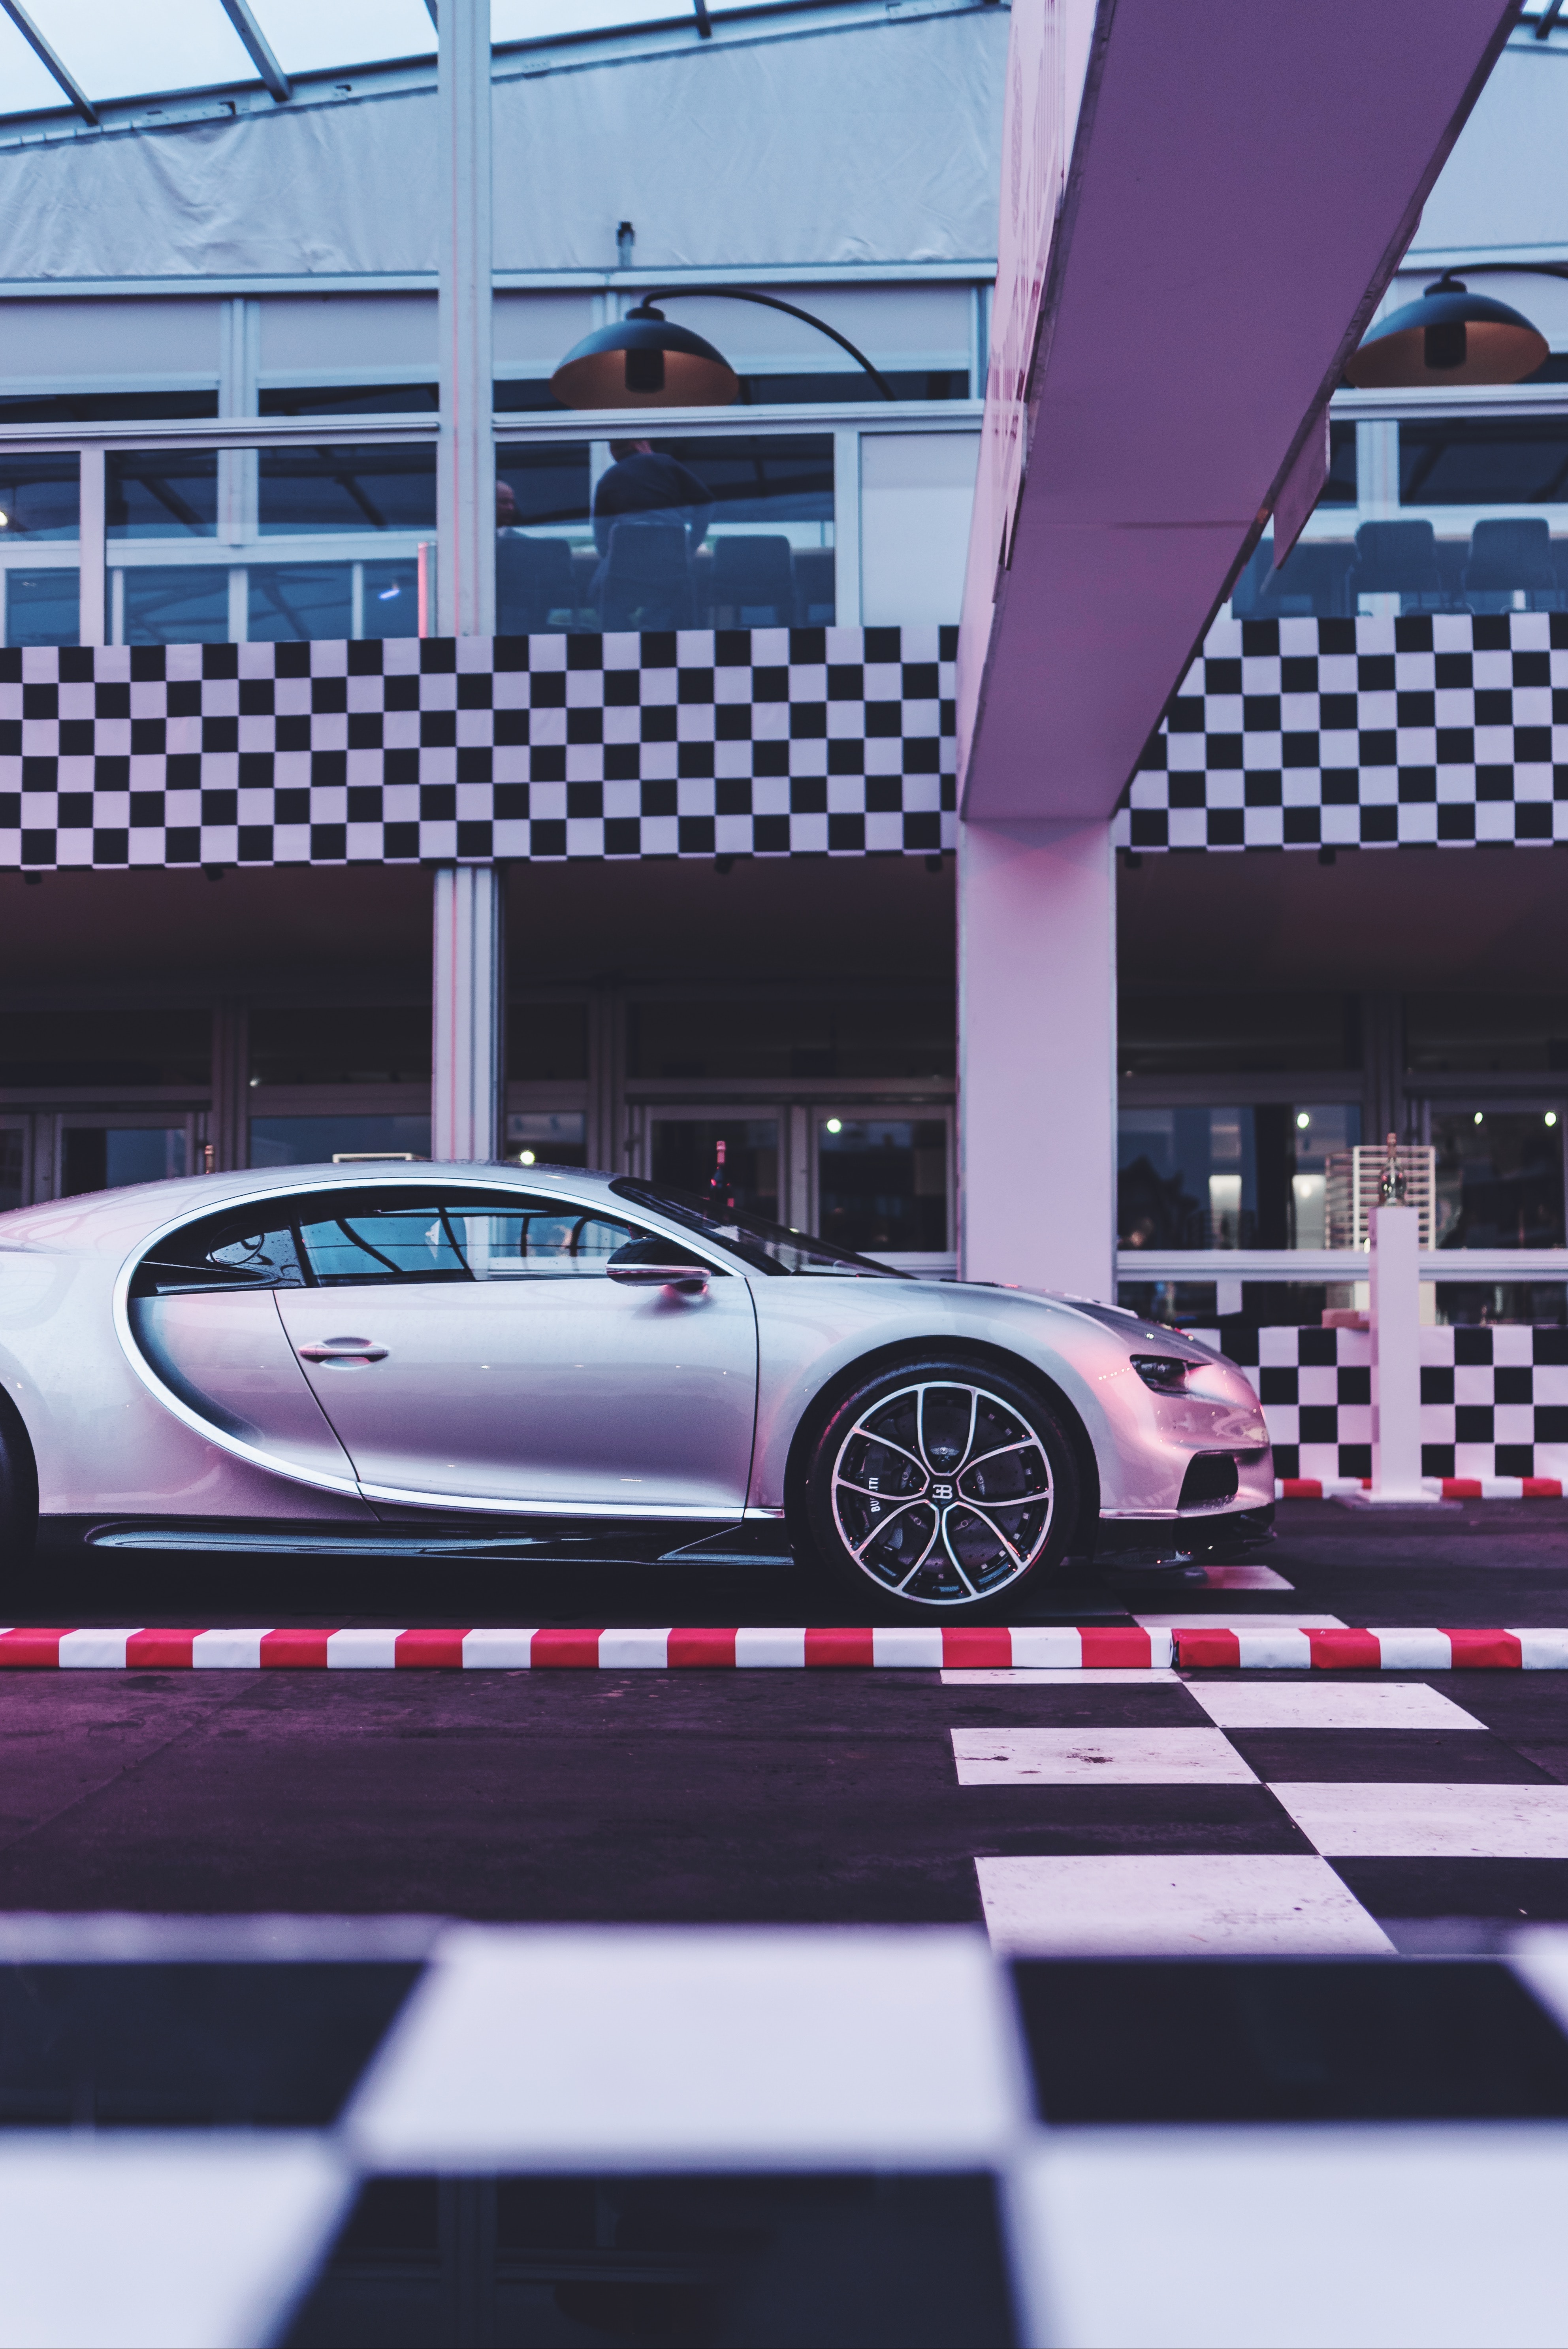 Скачать обои Bugatti Chiron на телефон бесплатно